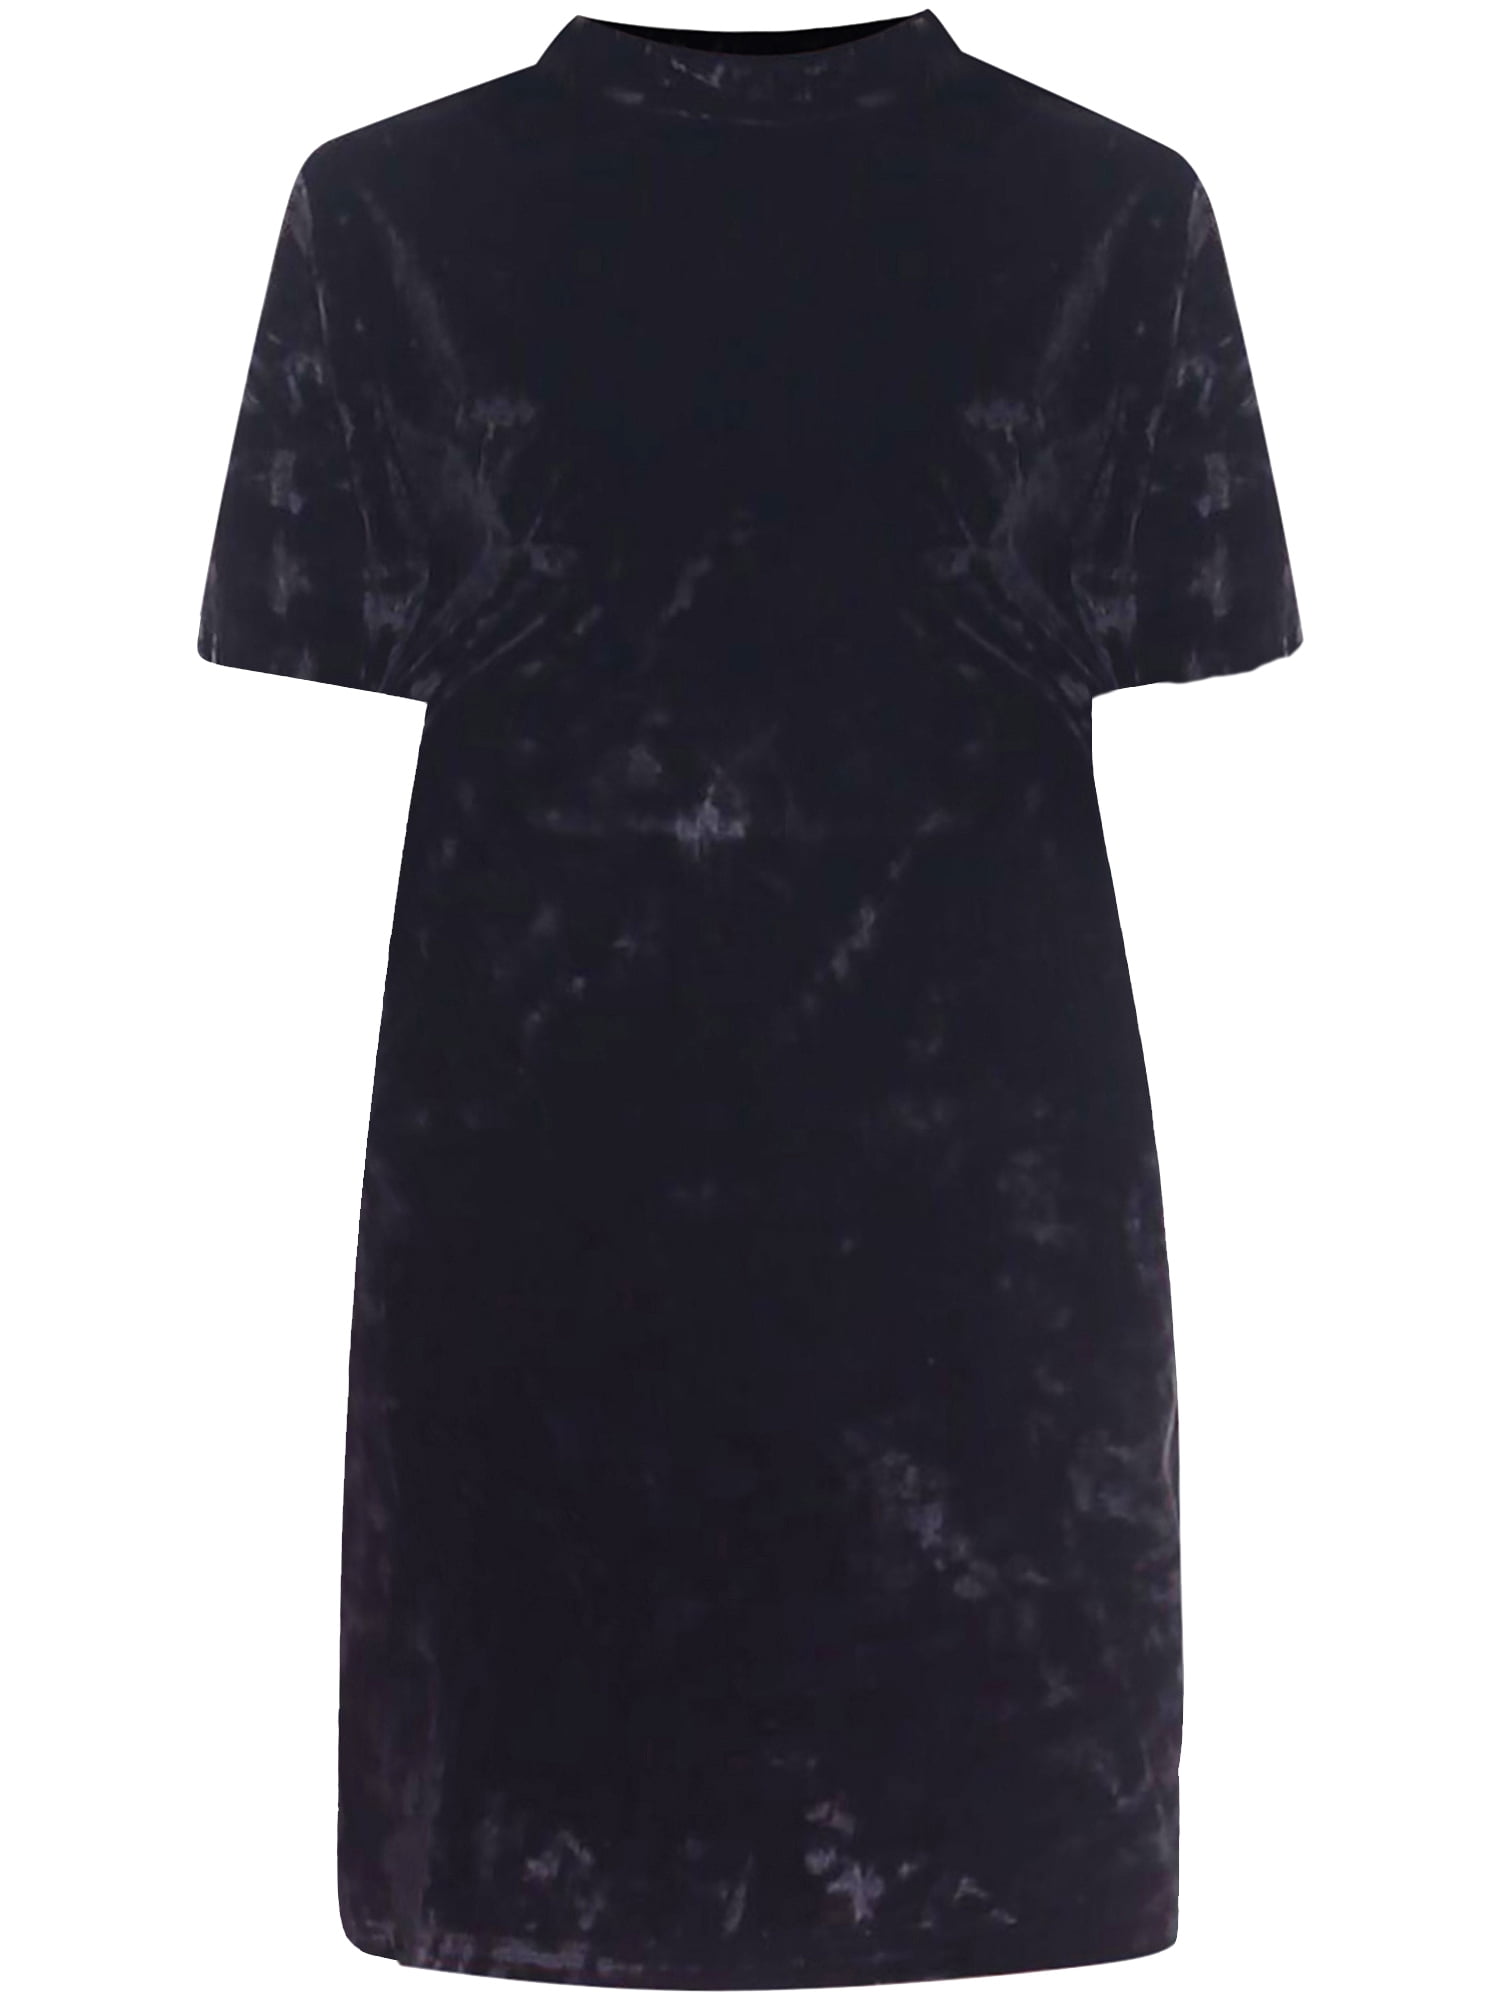 Black Velvet Short Sleeve Dress Size ...